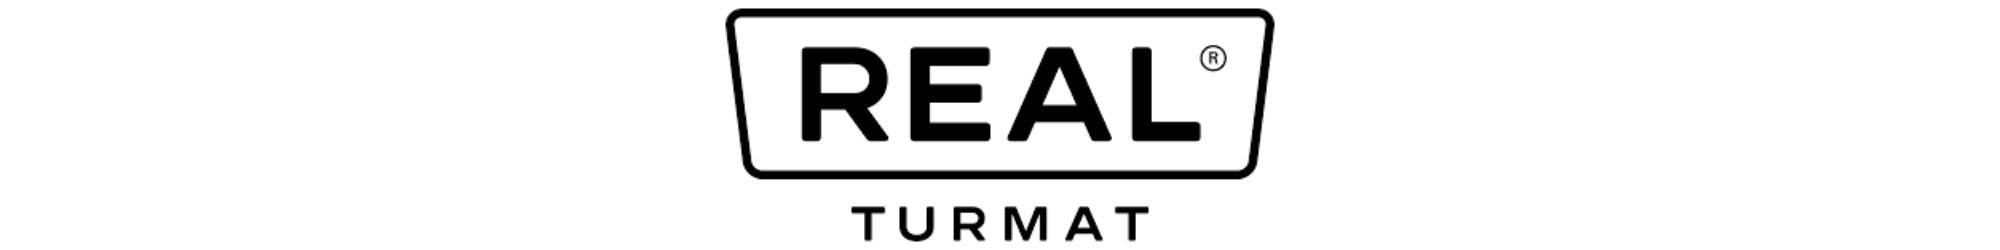 Köp Real Turmat från TacNGear - TacNGear